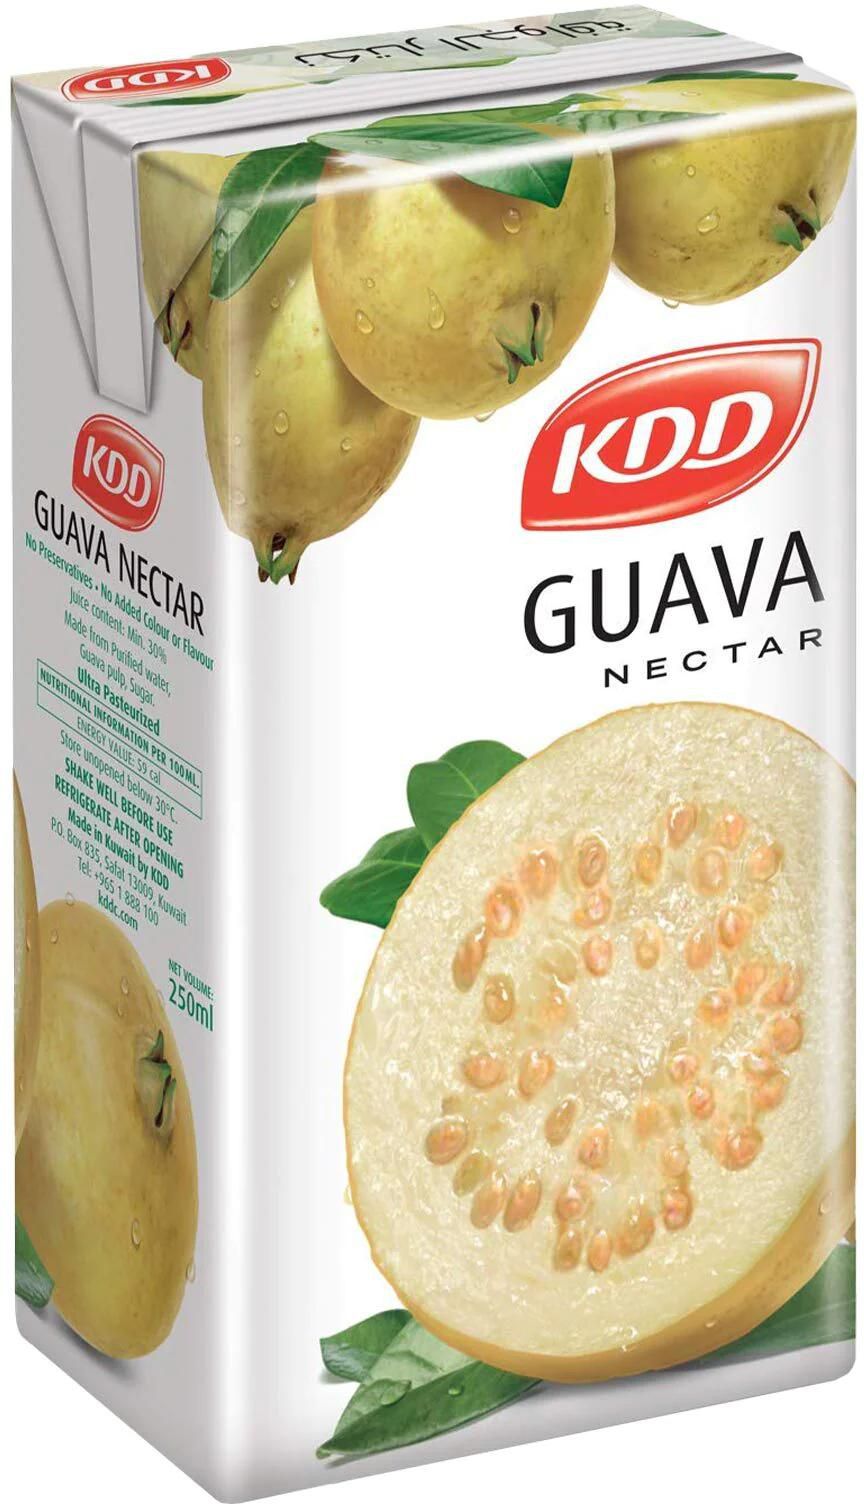 Kdd guava nectar 180ml